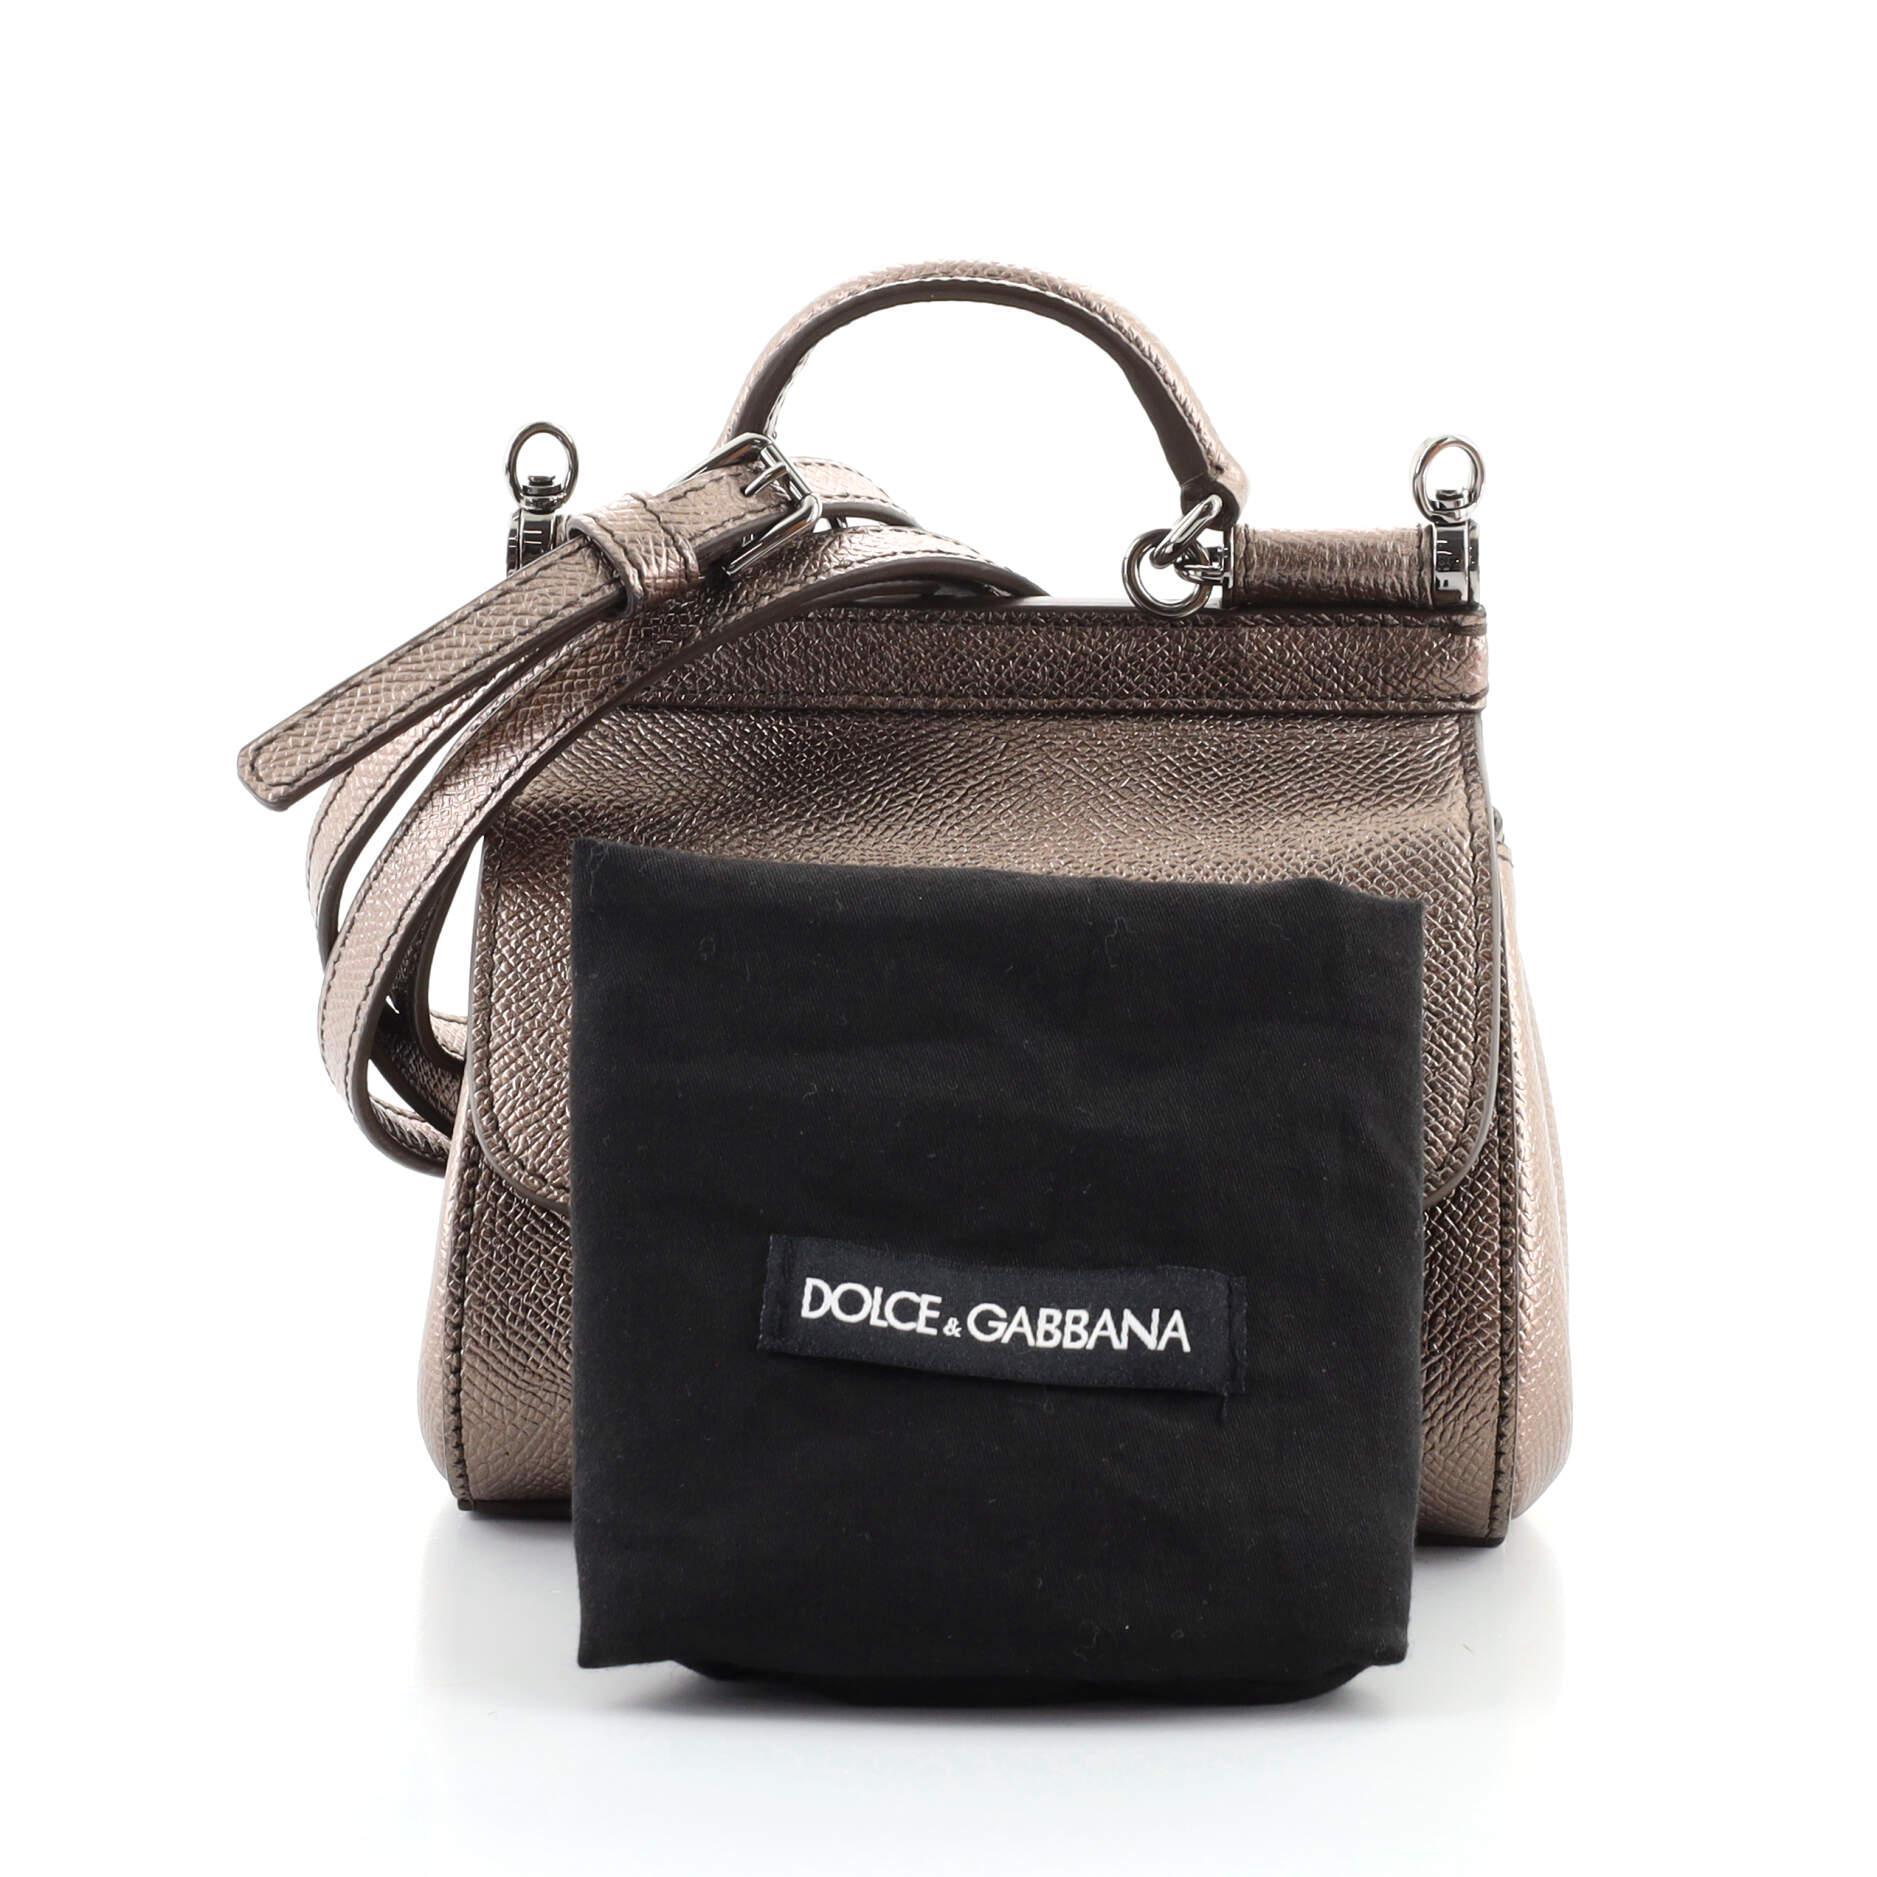 Dolce & Gabbana Mini Sicily Bag in Natural